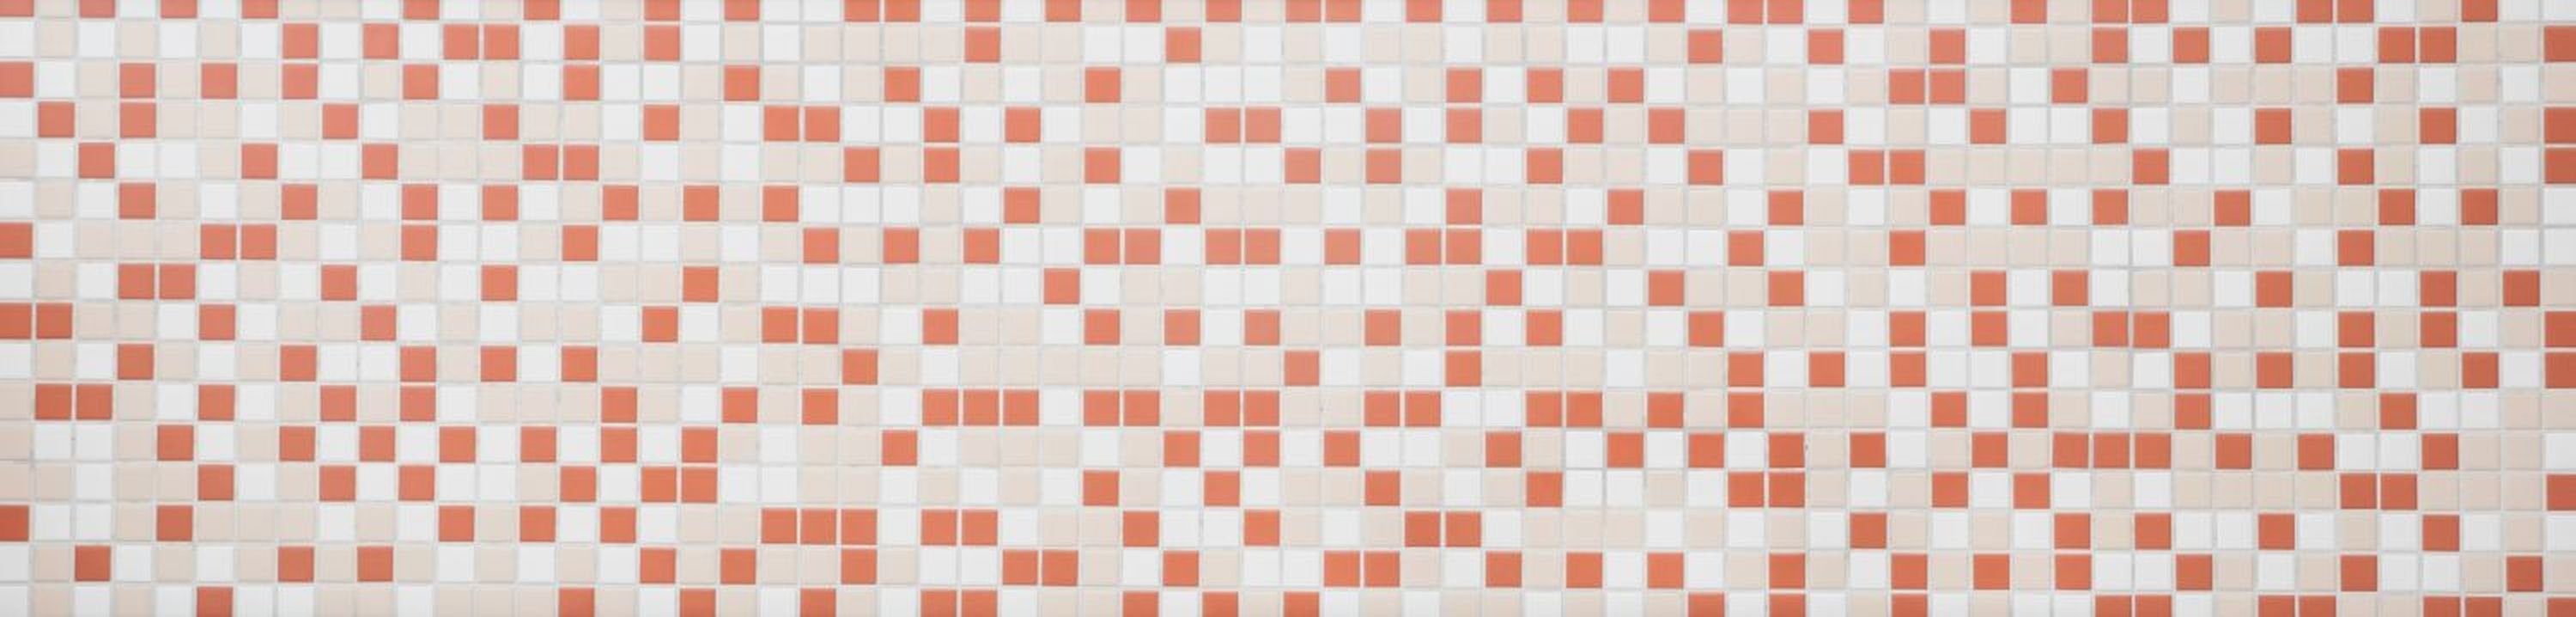 Mosani Mosaikfliesen Fliese terracotta Mosaik matt creme Küche Keramik Fliesenspiegel weiß